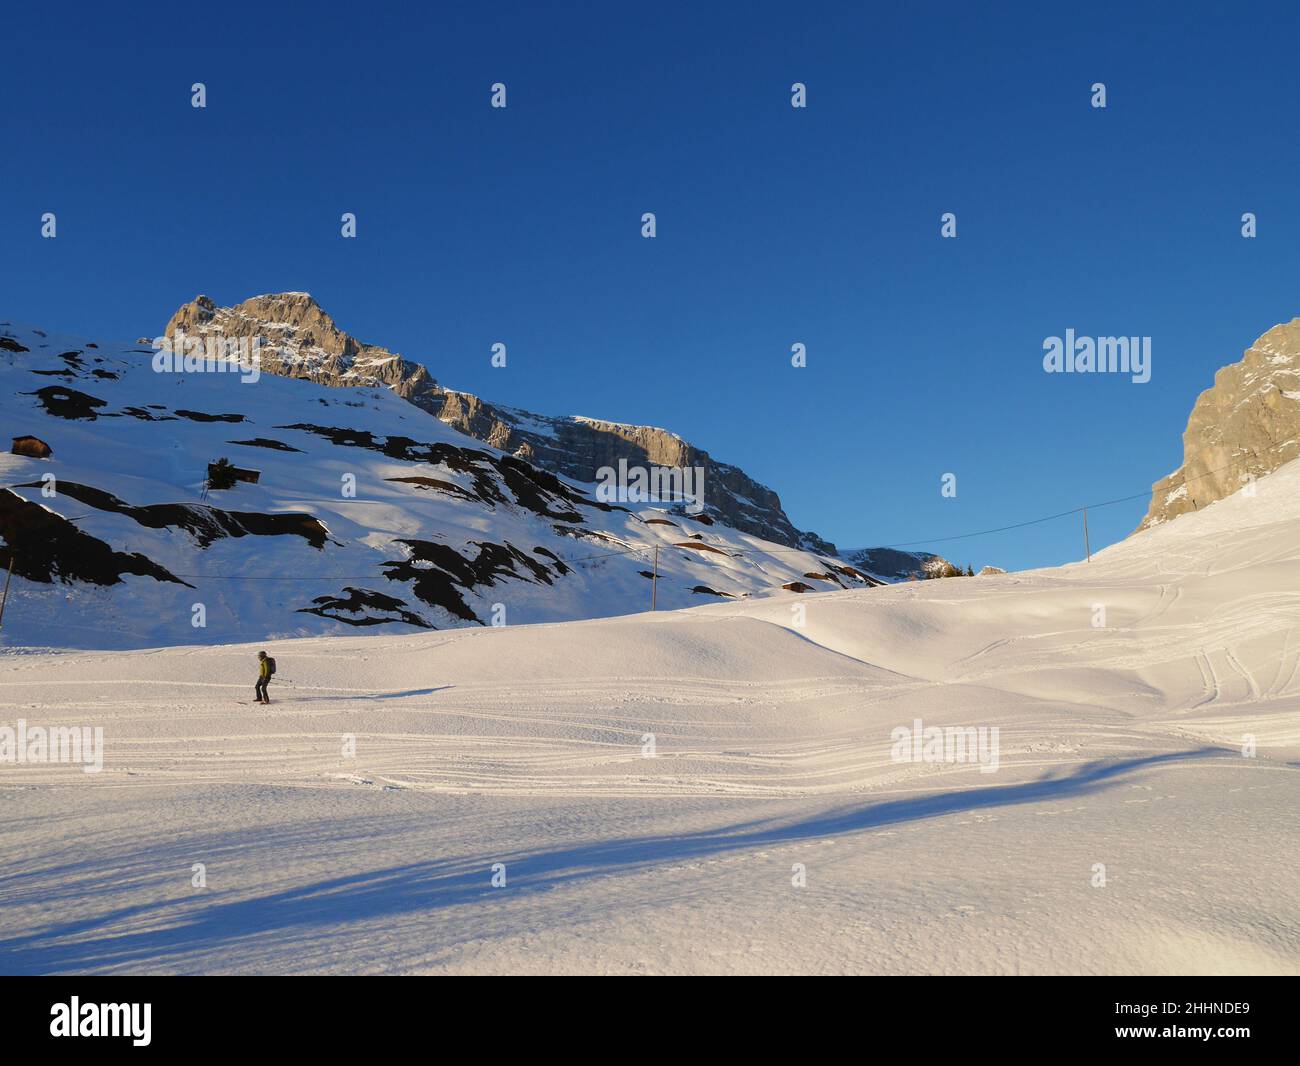 Freerider in wonderful winter landscape in Partnun. Praettigau, Graubuenden, Switzerland. Stock Photo